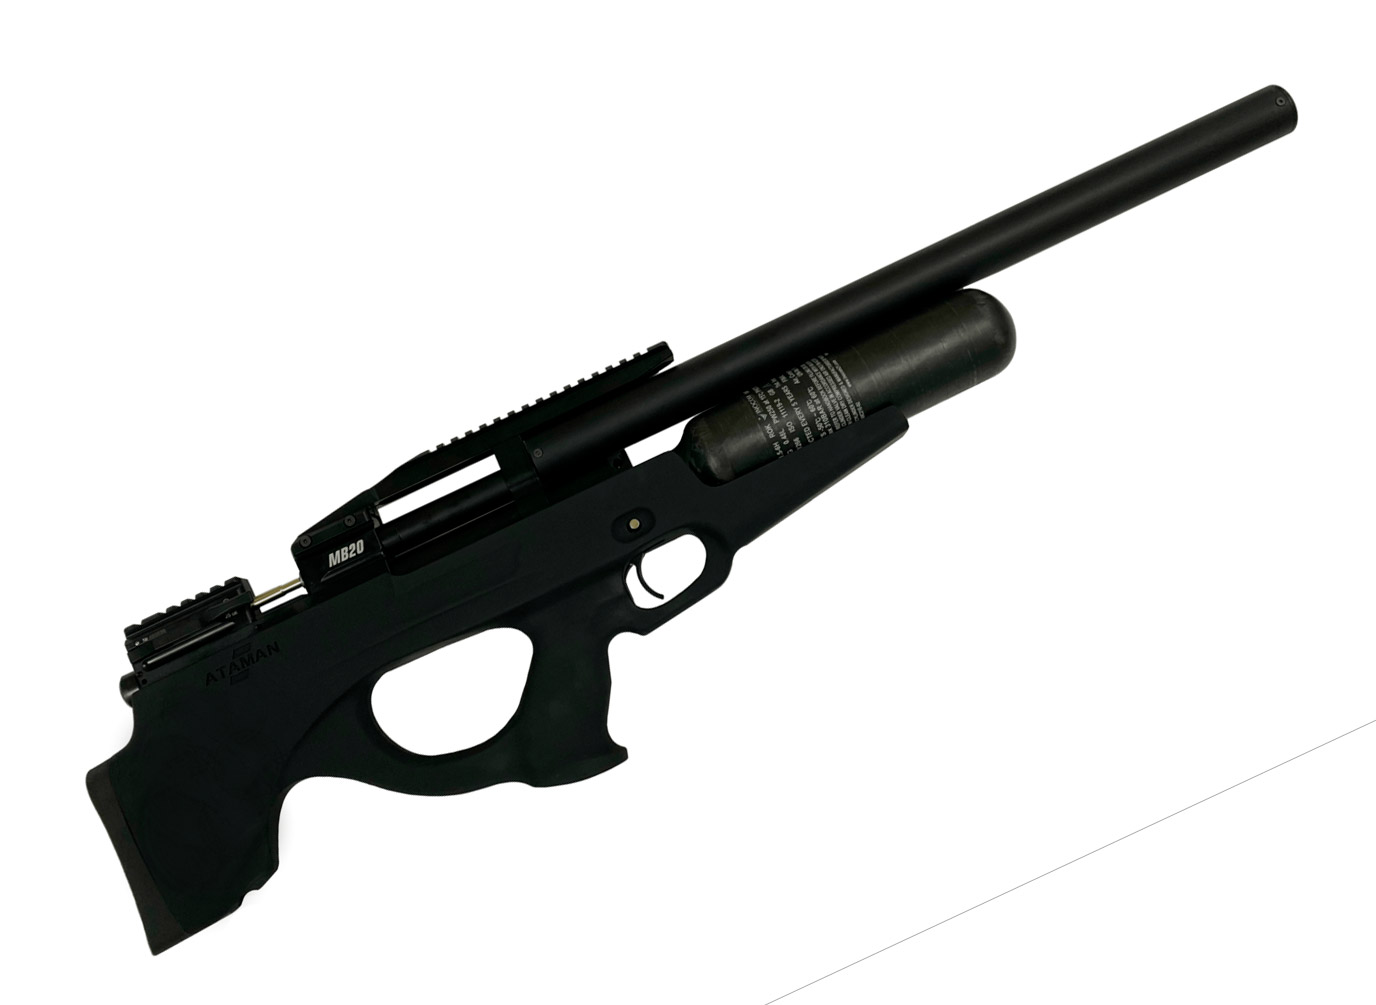 Пневматическая винтовка PCP Ataman MB20 Soft-Touch Black, кал. 6,35 мм. 3J (MB20-B26)